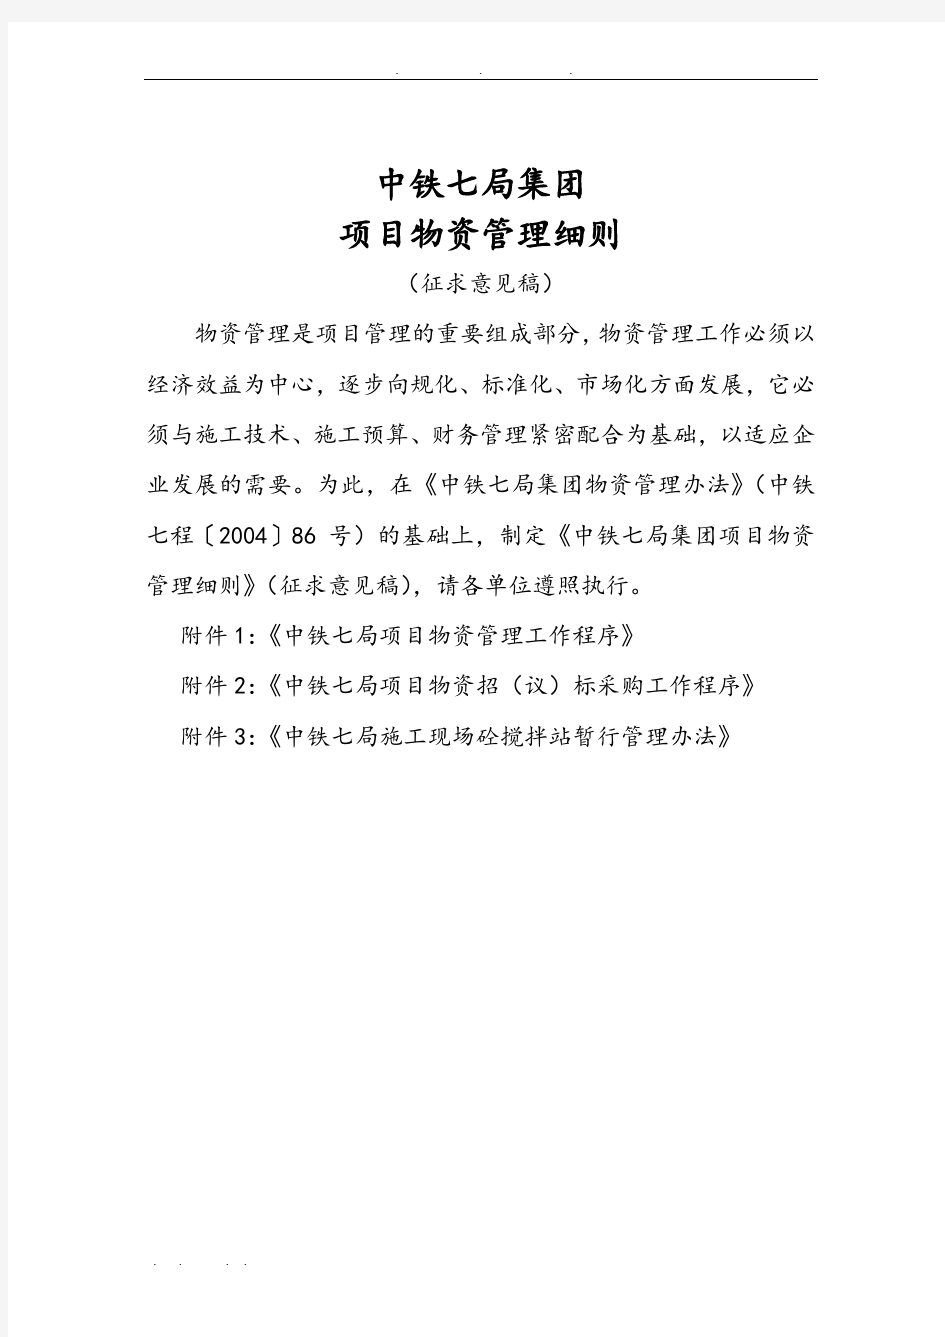 中铁七局集团有限公司项目物资管理细则